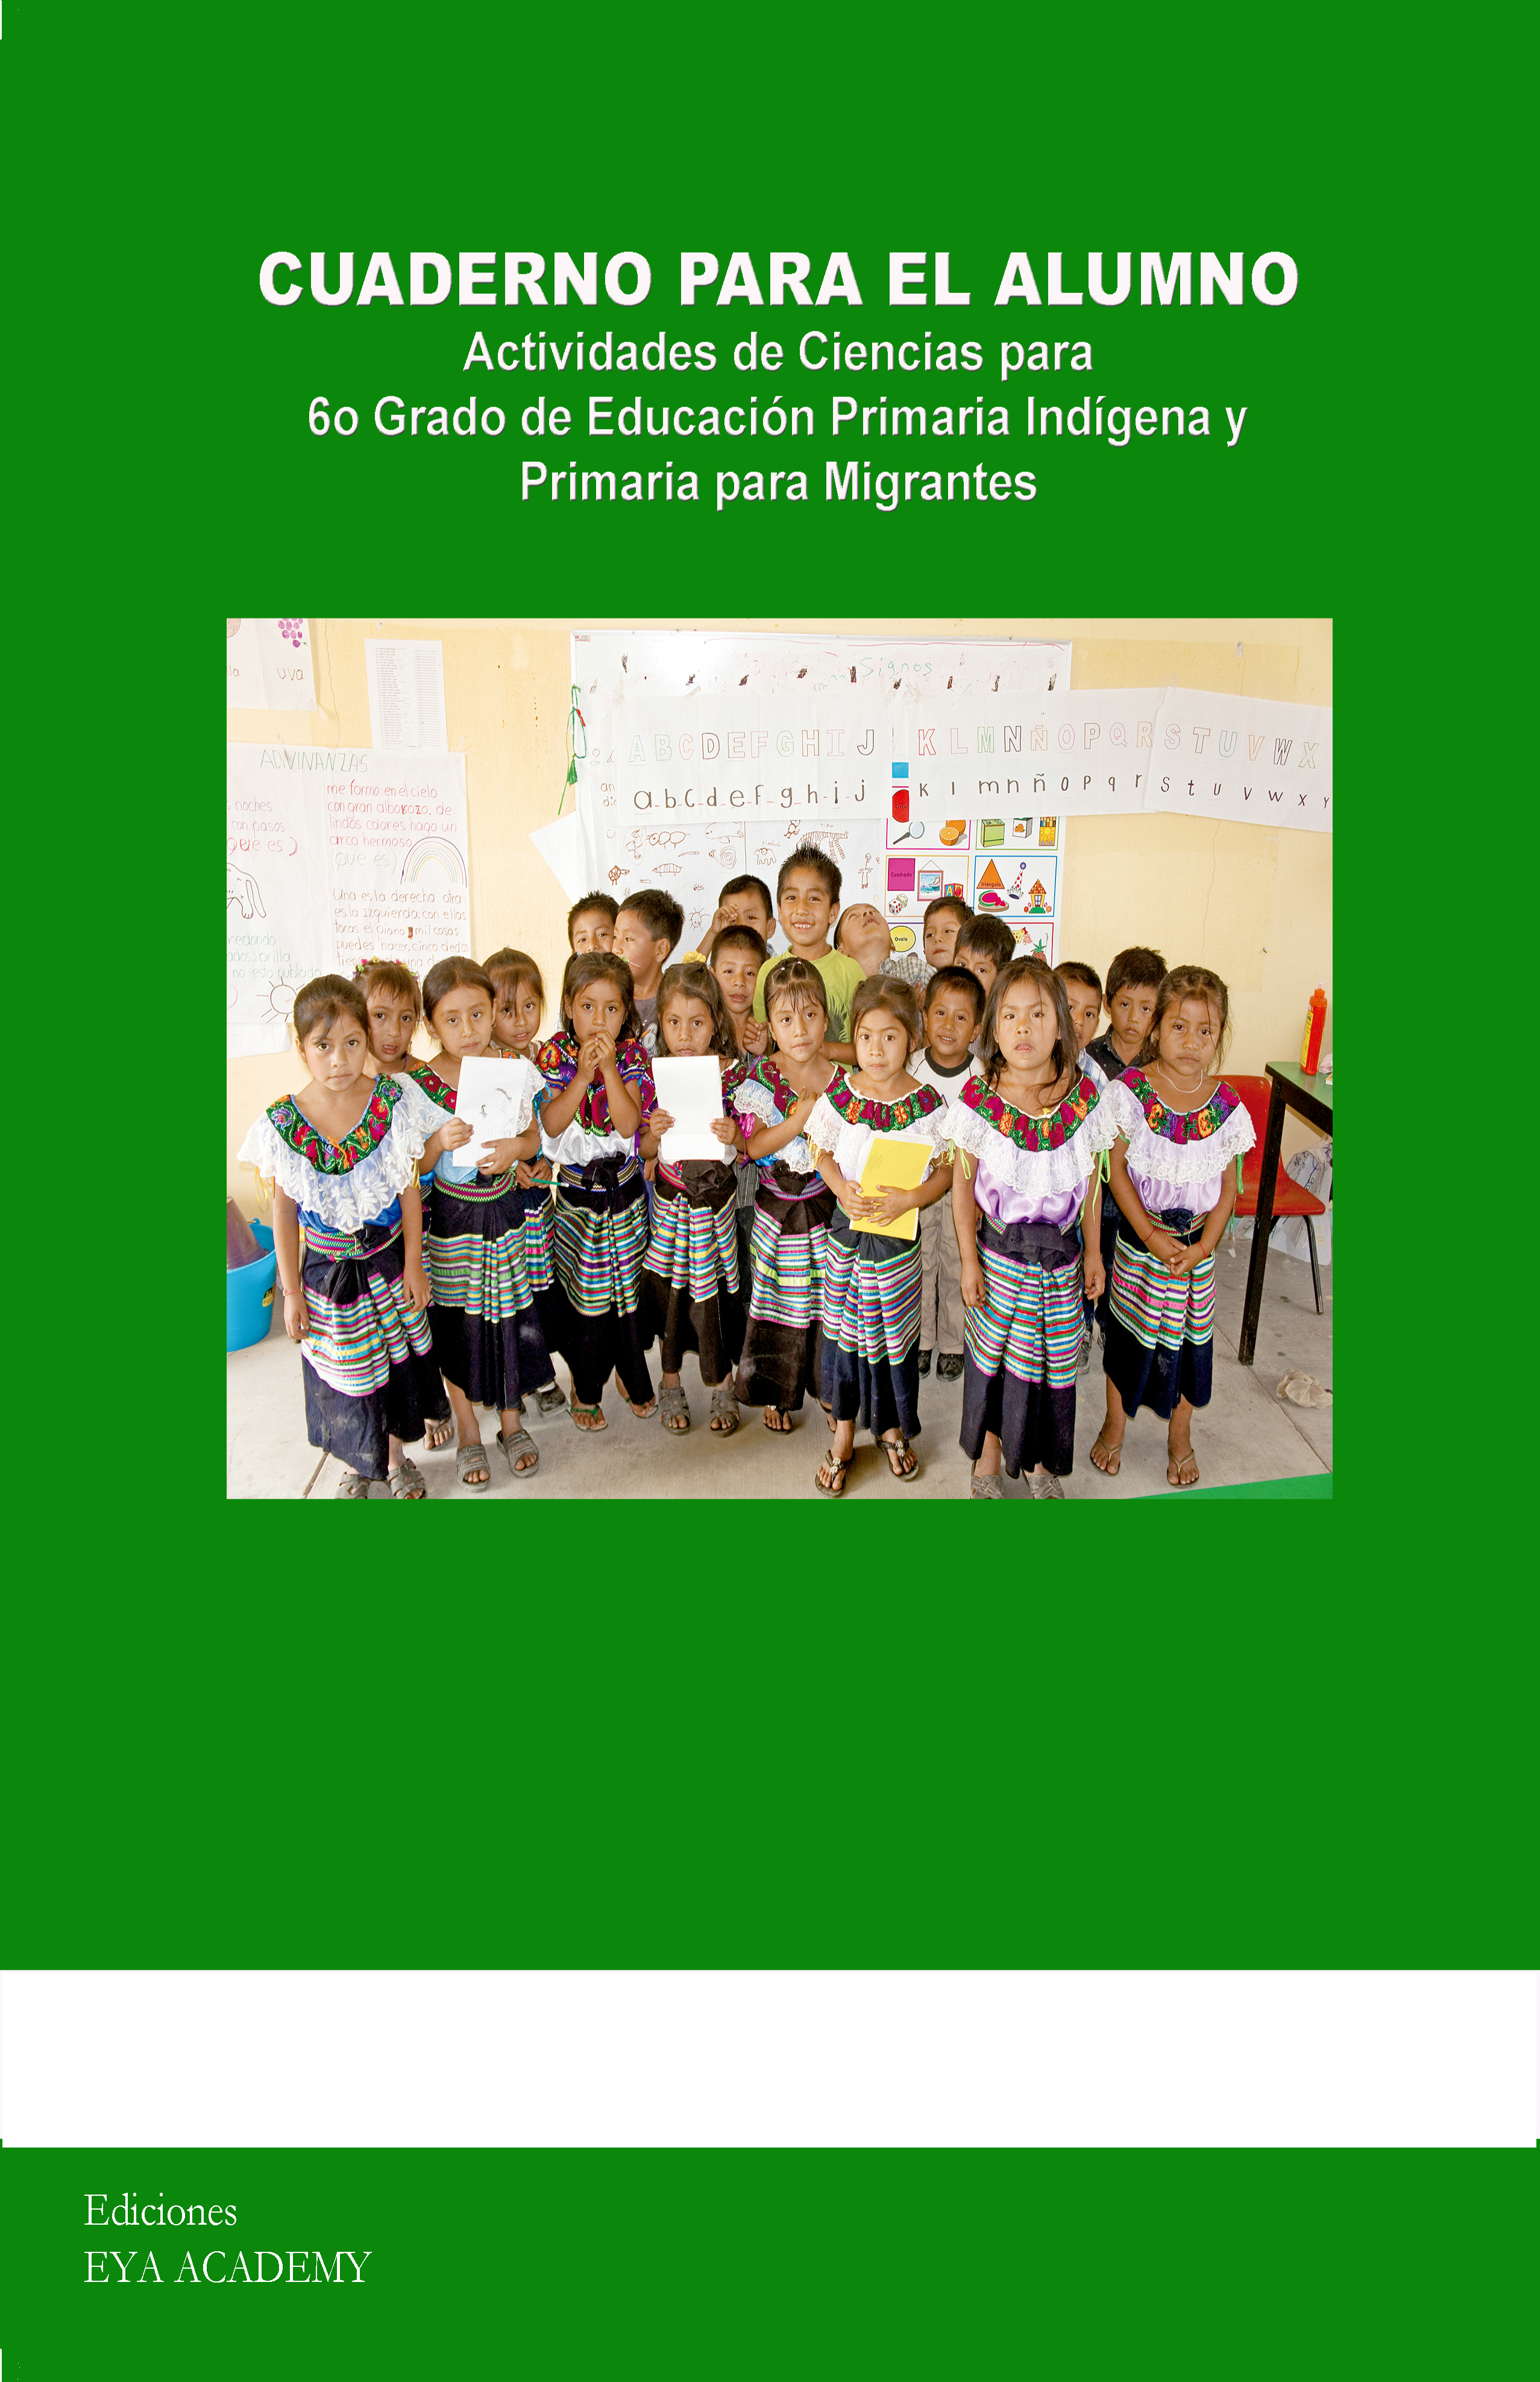 Cuaderno para el Alumno Actividades de Ciencias para 6º Grado de Educación Primaria Indígena y Primaria para Migrantes